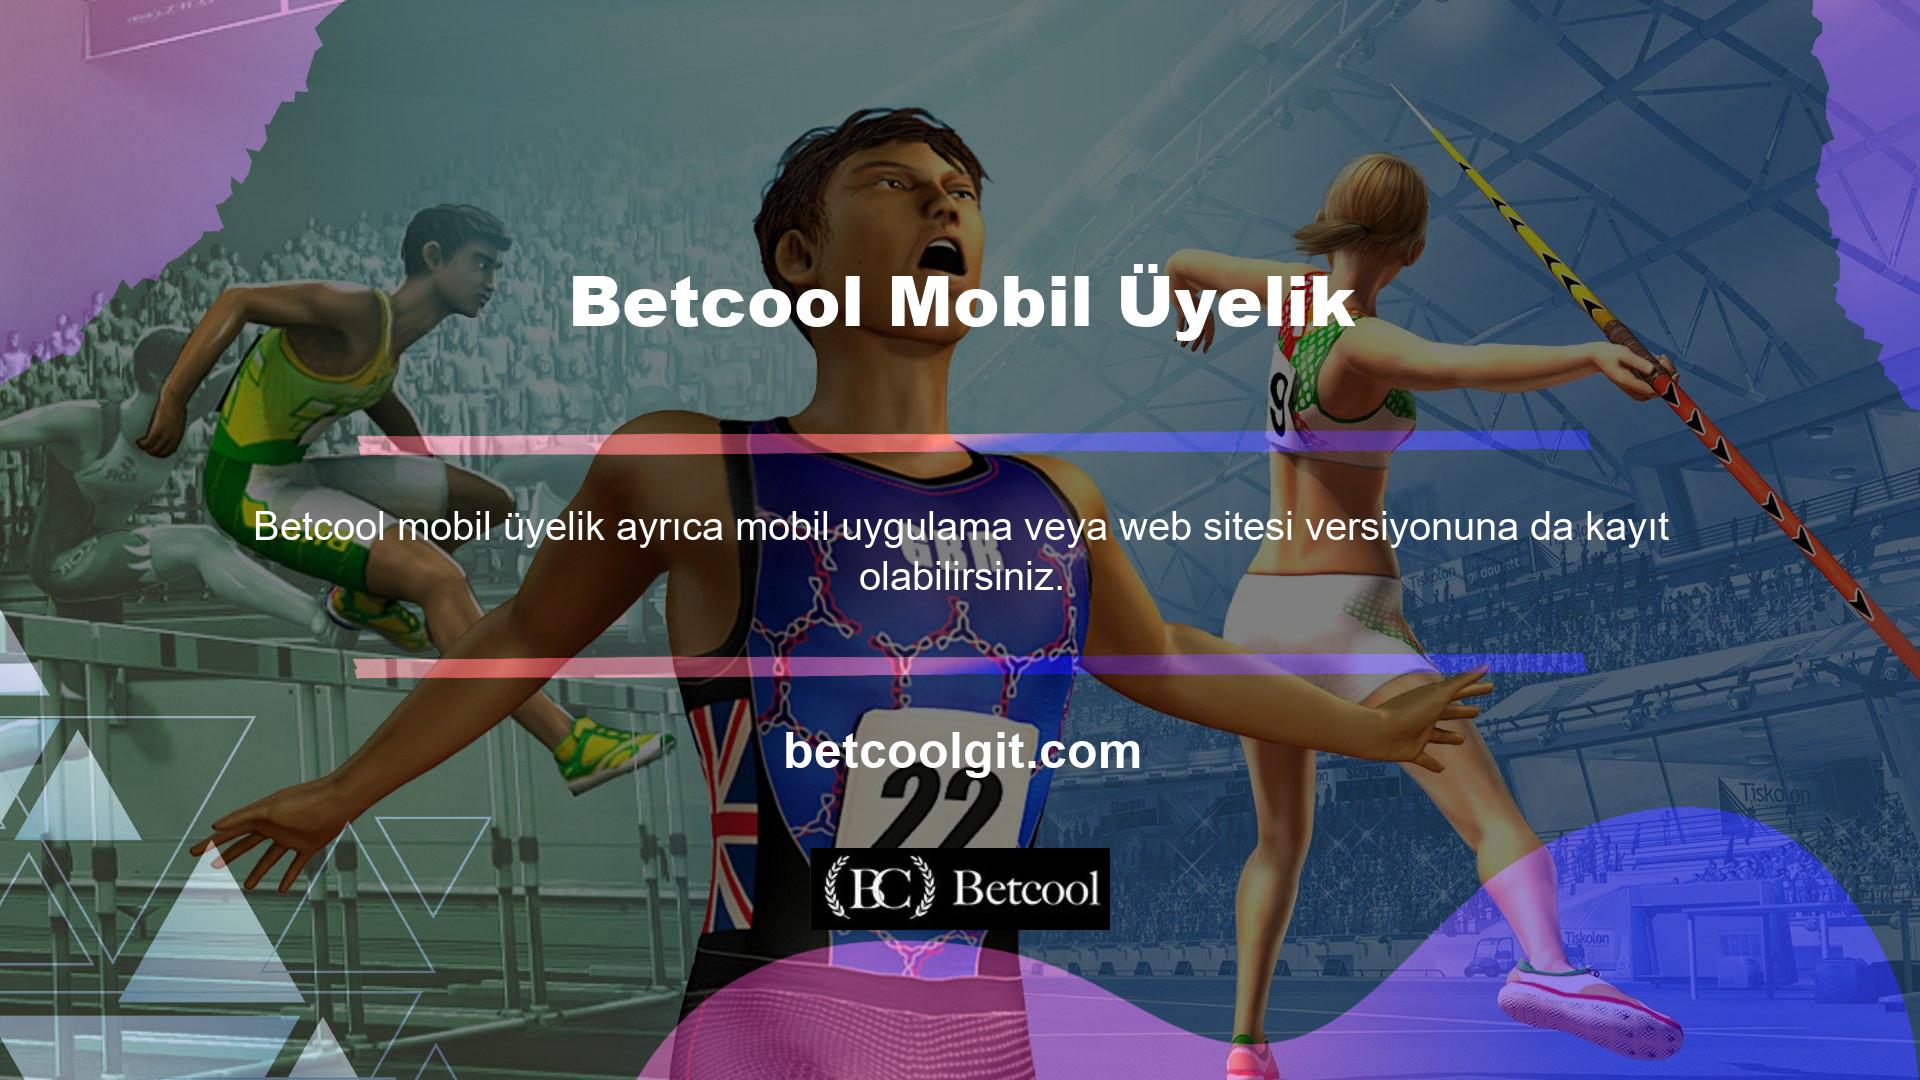 Web sitesinin mobil üyelik sayfasına kayıt olmak için Betcool mobil üyelik sitesinin mobil kayıt sayfasını Google arama motoruna giriniz